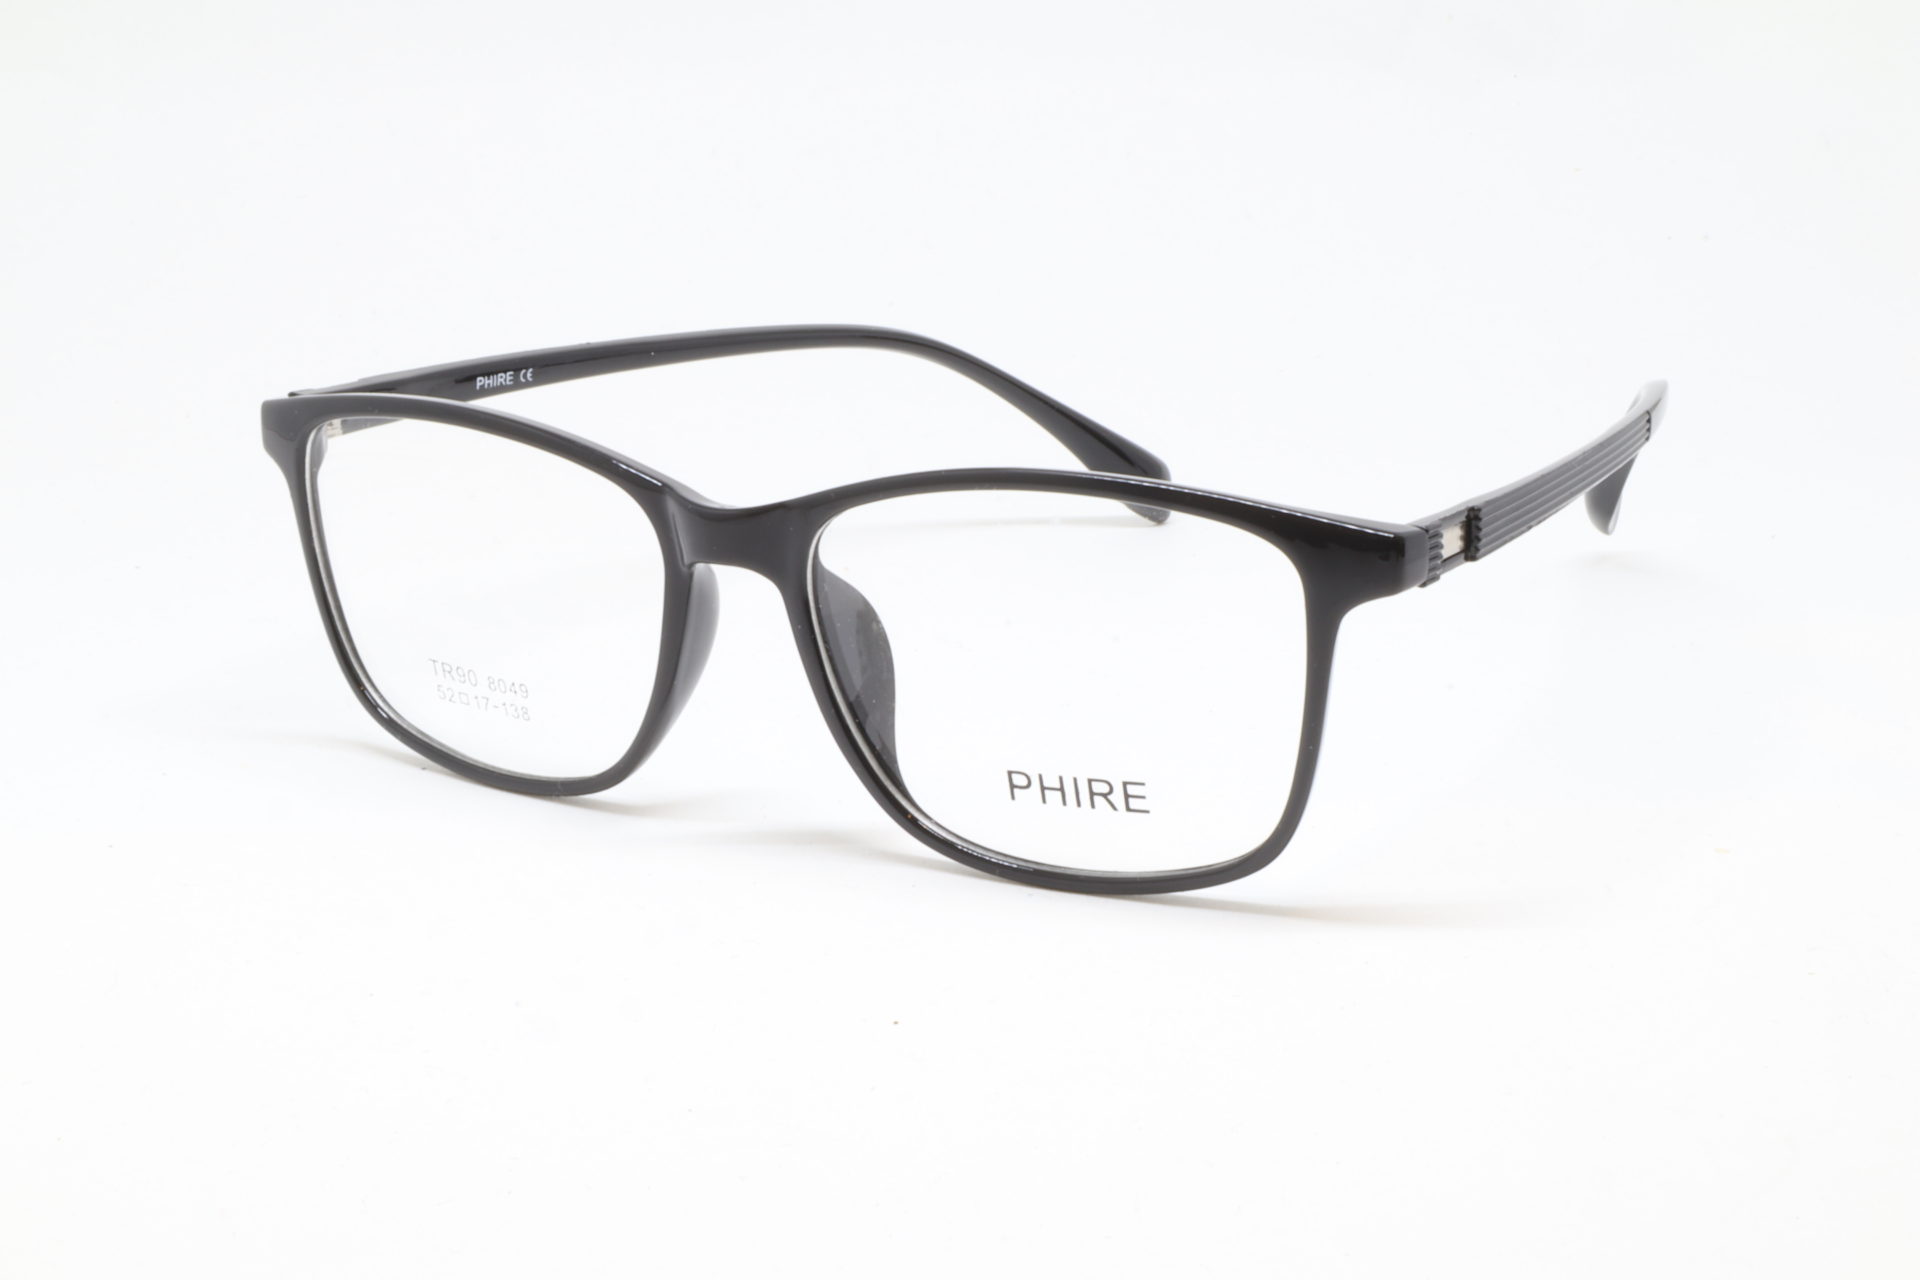 Phire - Symmetry Eyewear